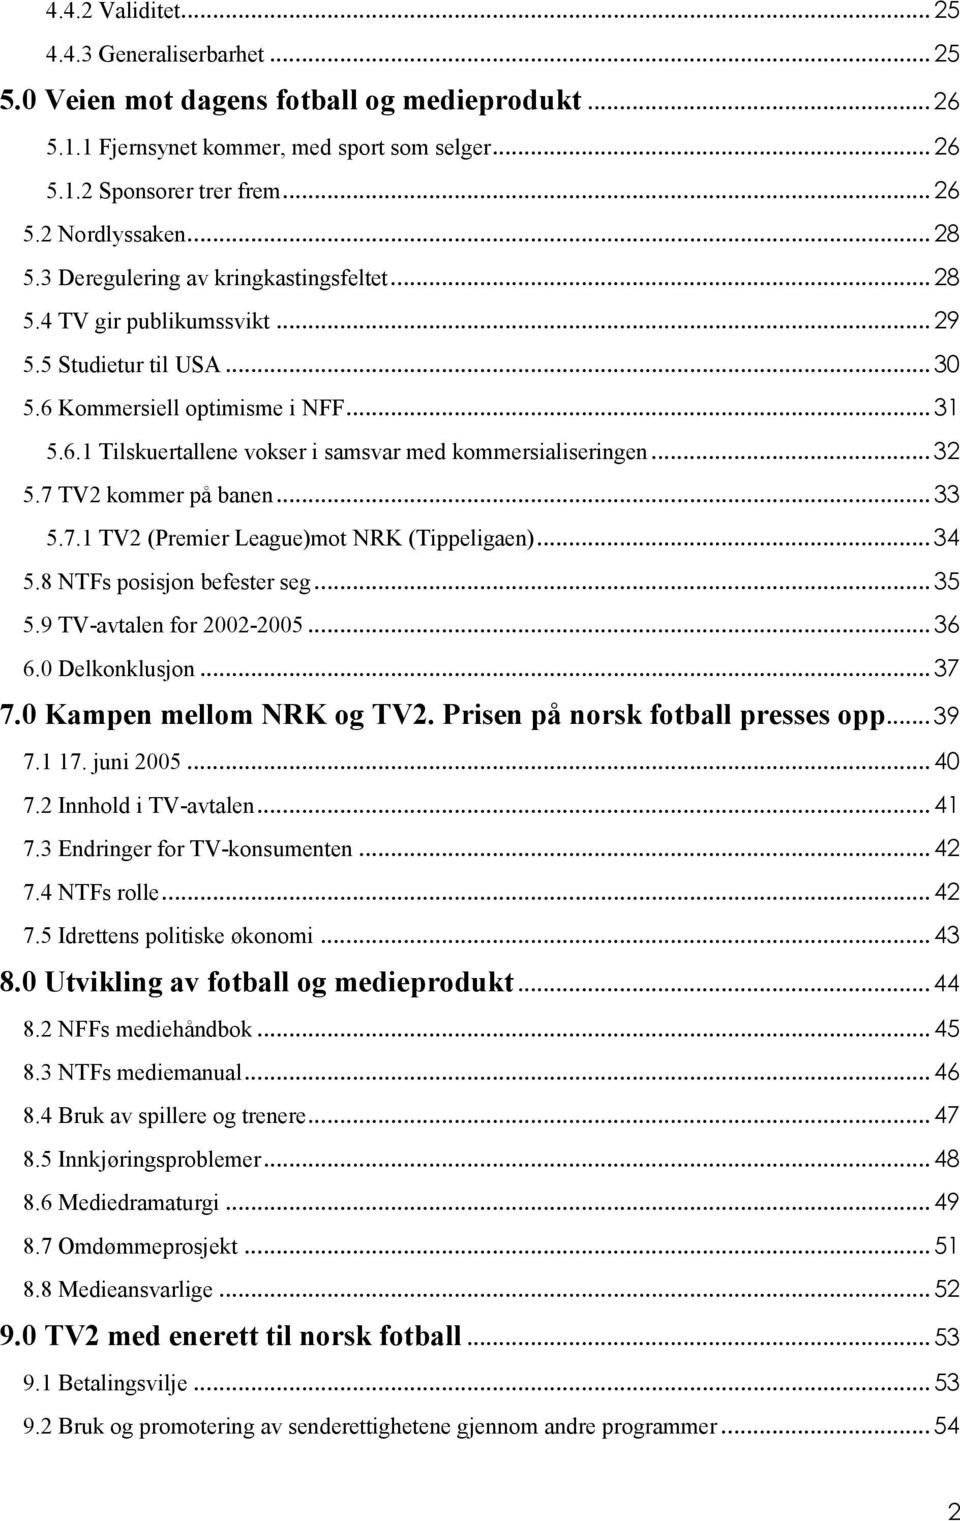 .. 32 5.7 TV2 kommer på banen... 33 5.7.1 TV2 (Premier League)mot NRK (Tippeligaen)... 34 5.8 NTFs posisjon befester seg... 35 5.9 TV-avtalen for 2002-2005... 36 6.0 Delkonklusjon... 37 7.